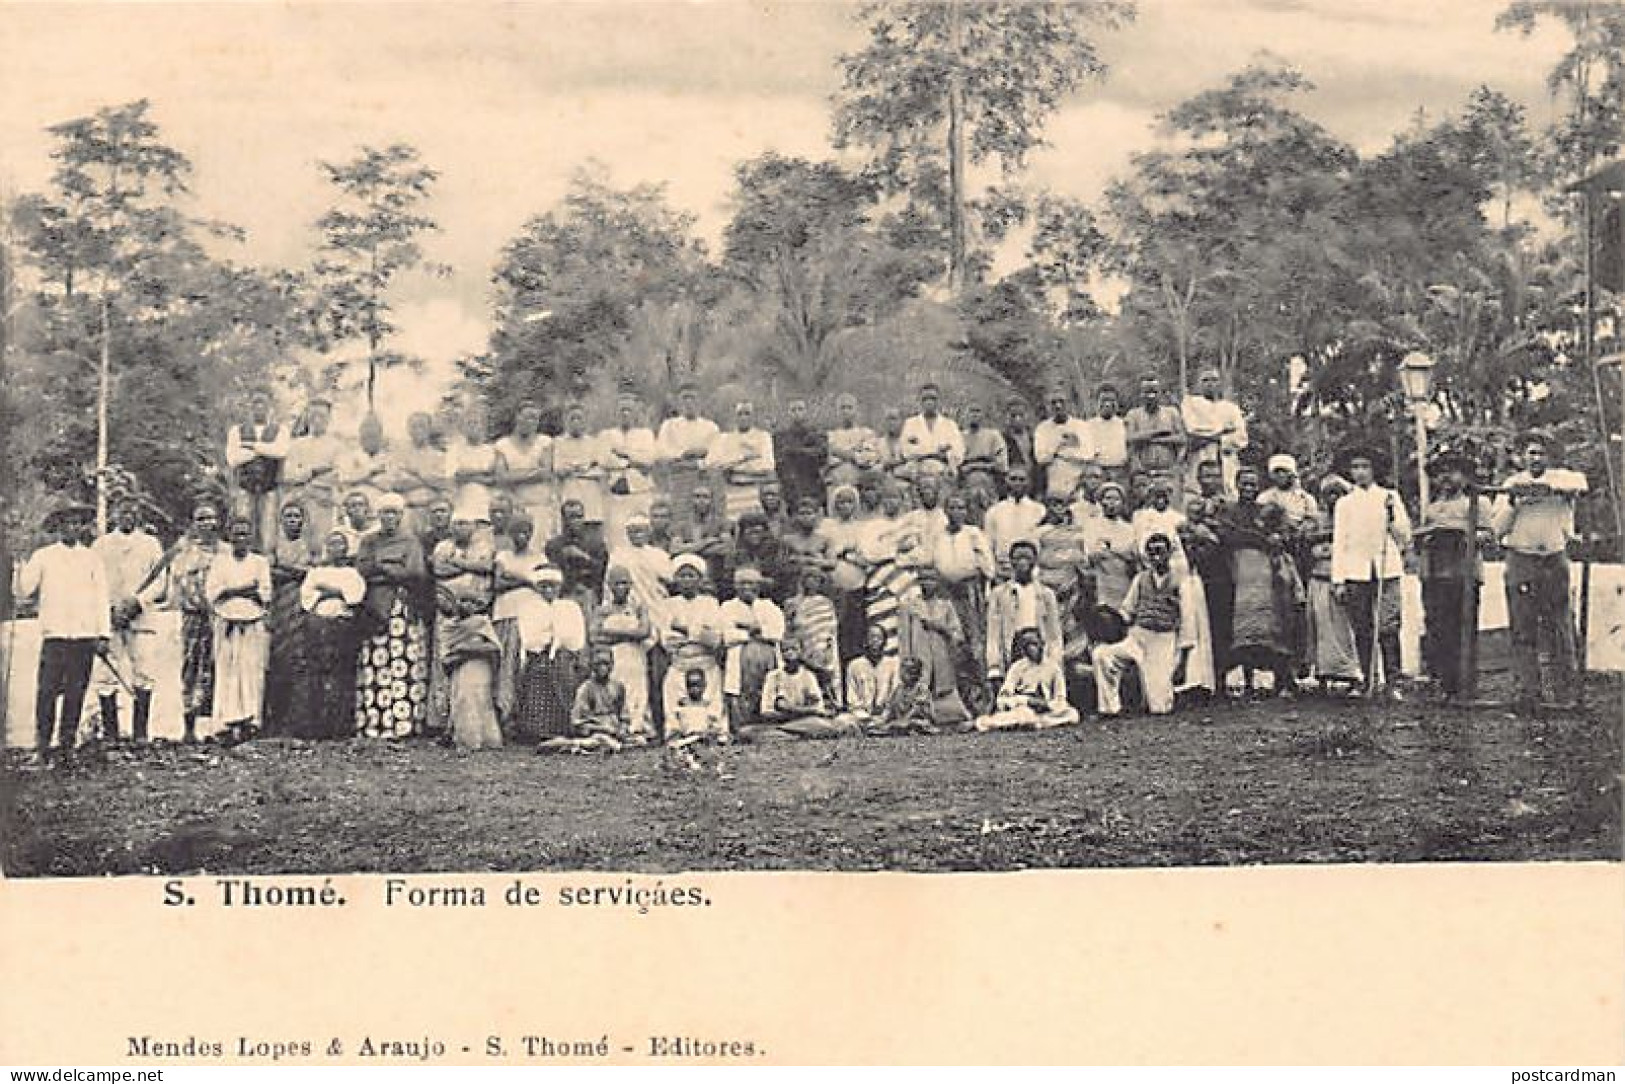 SAO TOME - Servants - Publ. Mendes. - Sao Tome Et Principe